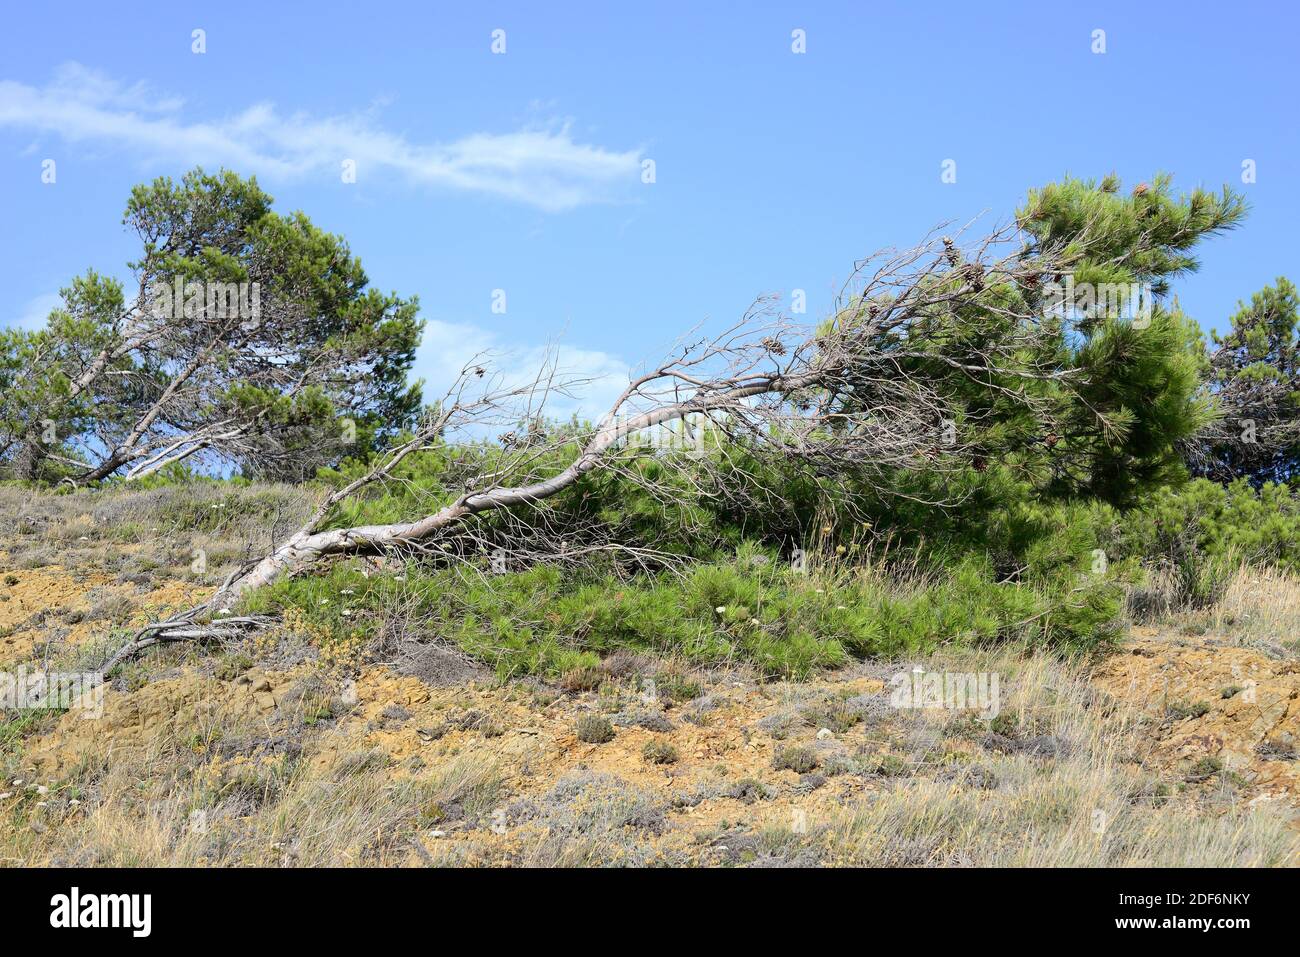 Il pino di Aleppo (Pinus halepensis) è un albero di conifere originario del Bacino mediterraneo. È particolarmente abbondante nella Spagna orientale. Adattamento del vento. Questo Foto Stock